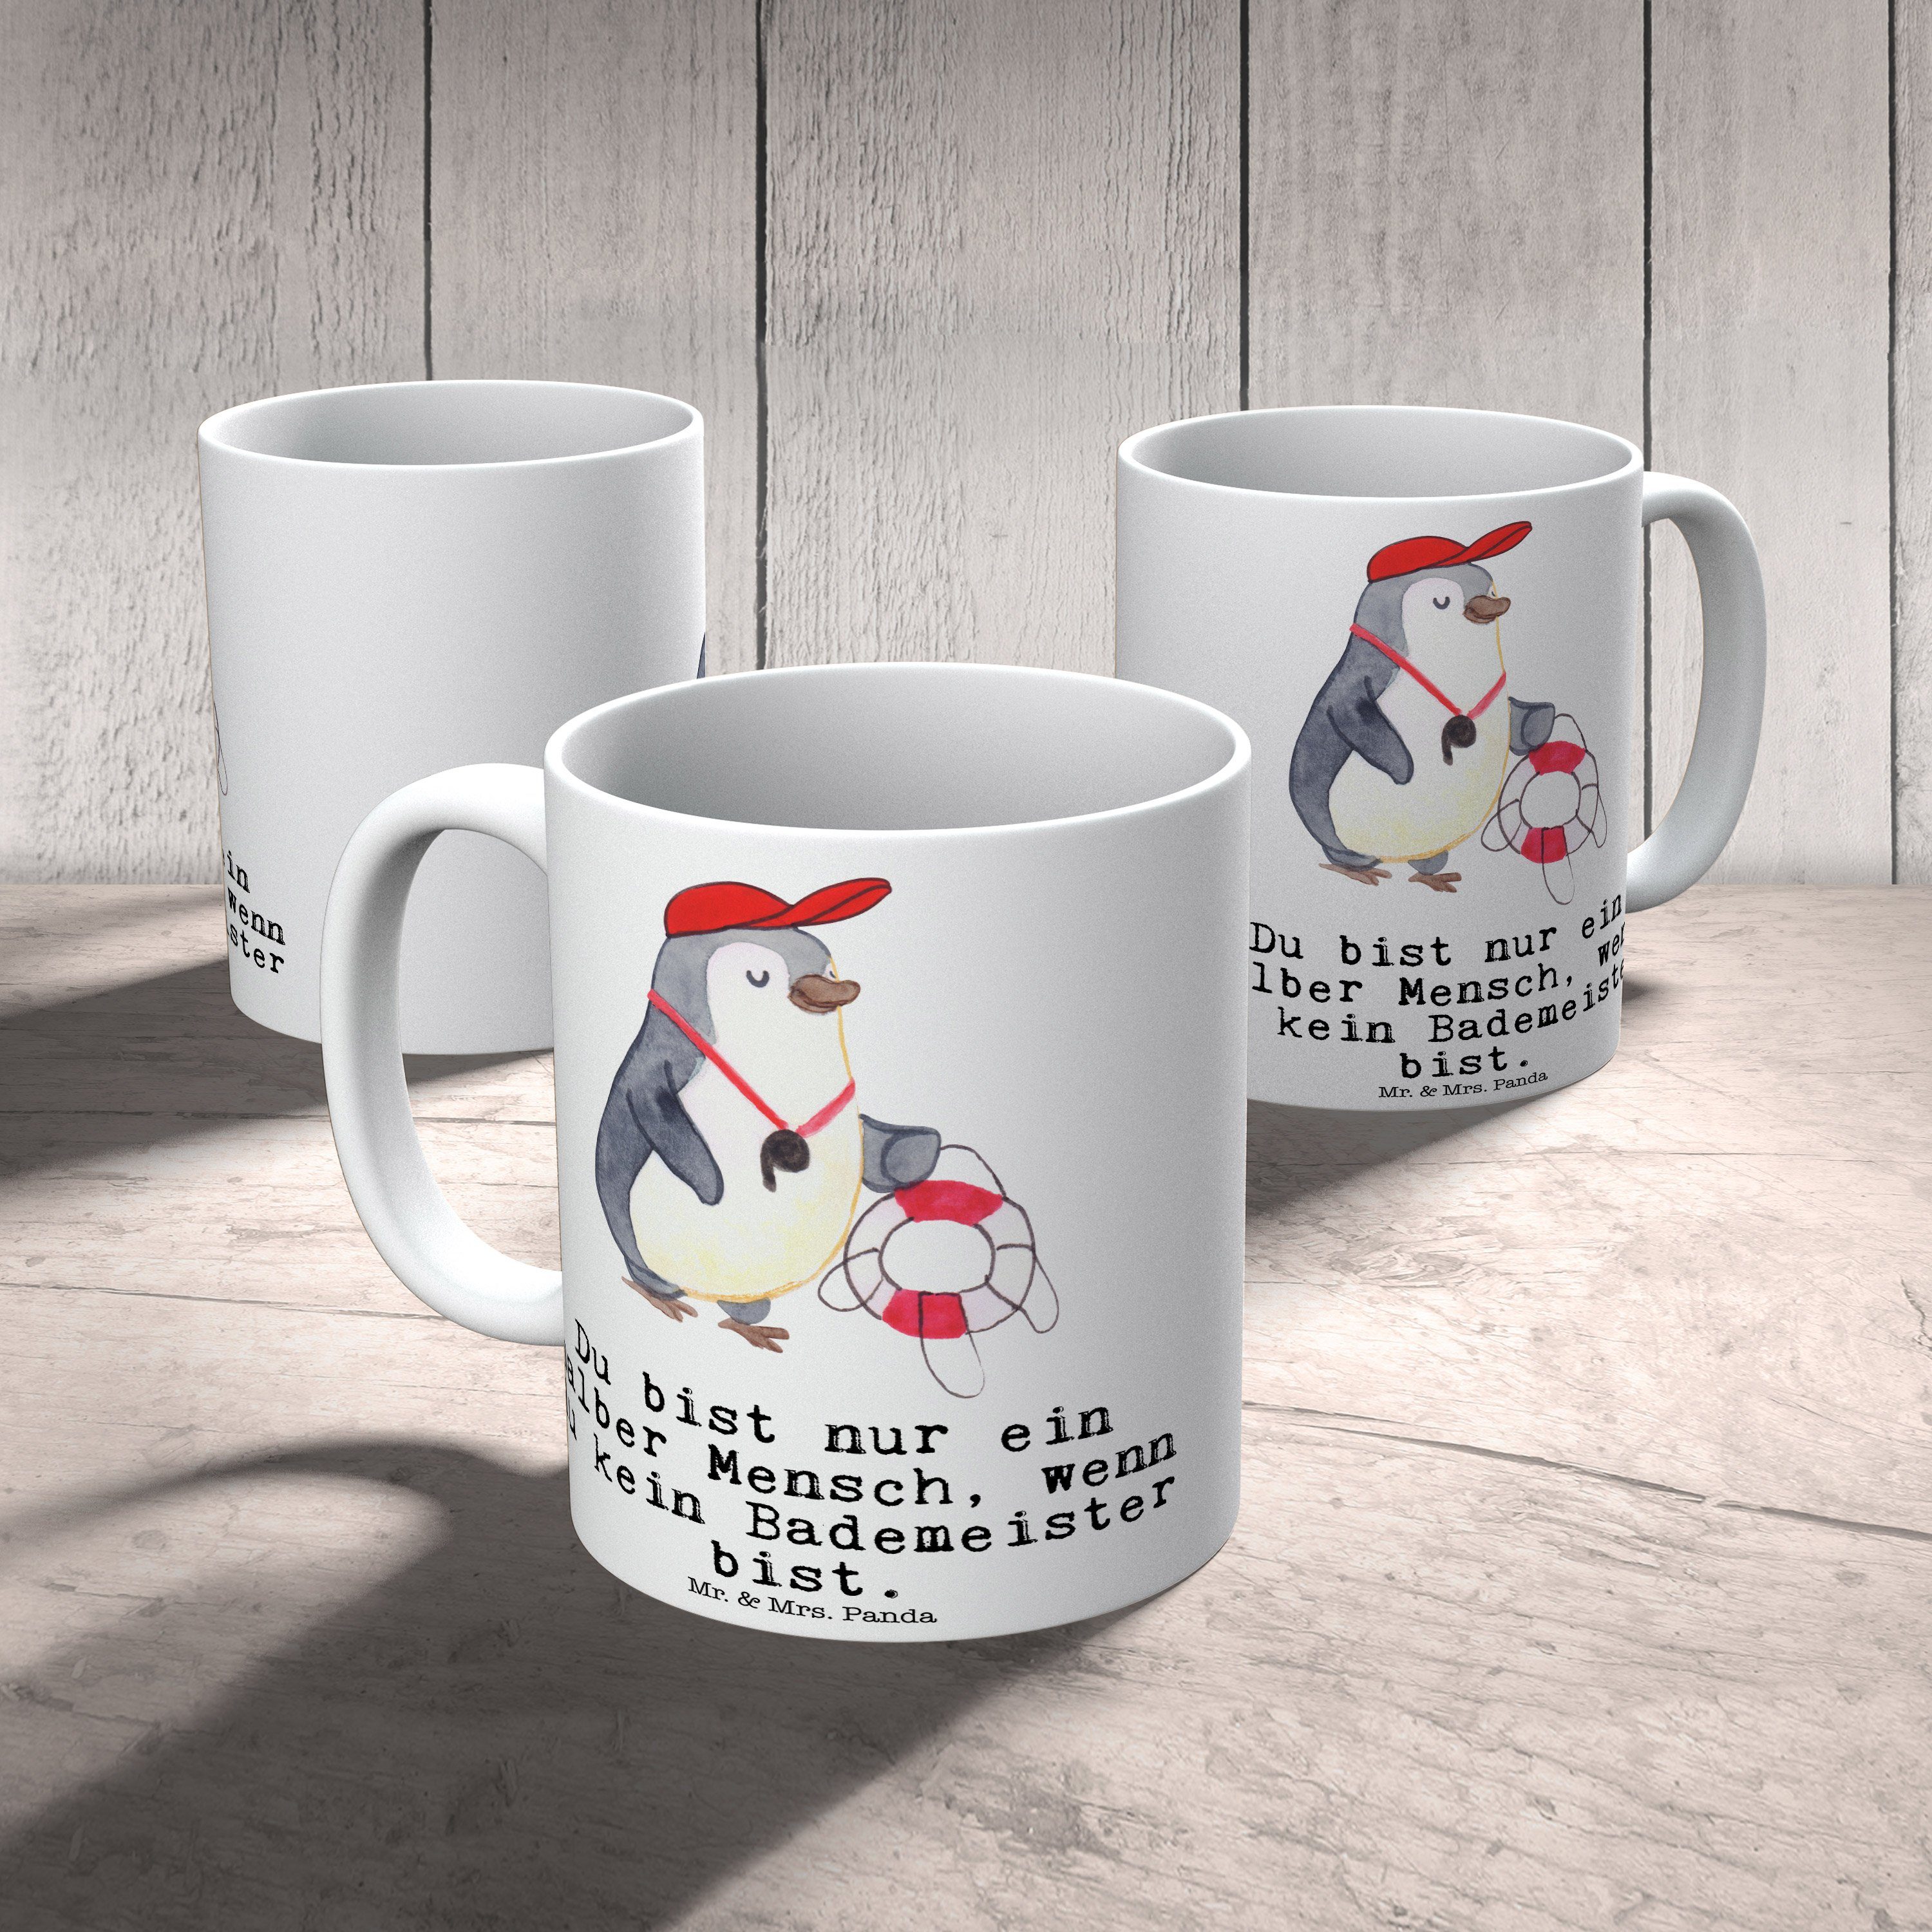 Mr. & Mrs. Panda Tasse Firma, Bademeister Becher, Weiß Schwimmmeister, Geschenk, - mit Herz Keramik 